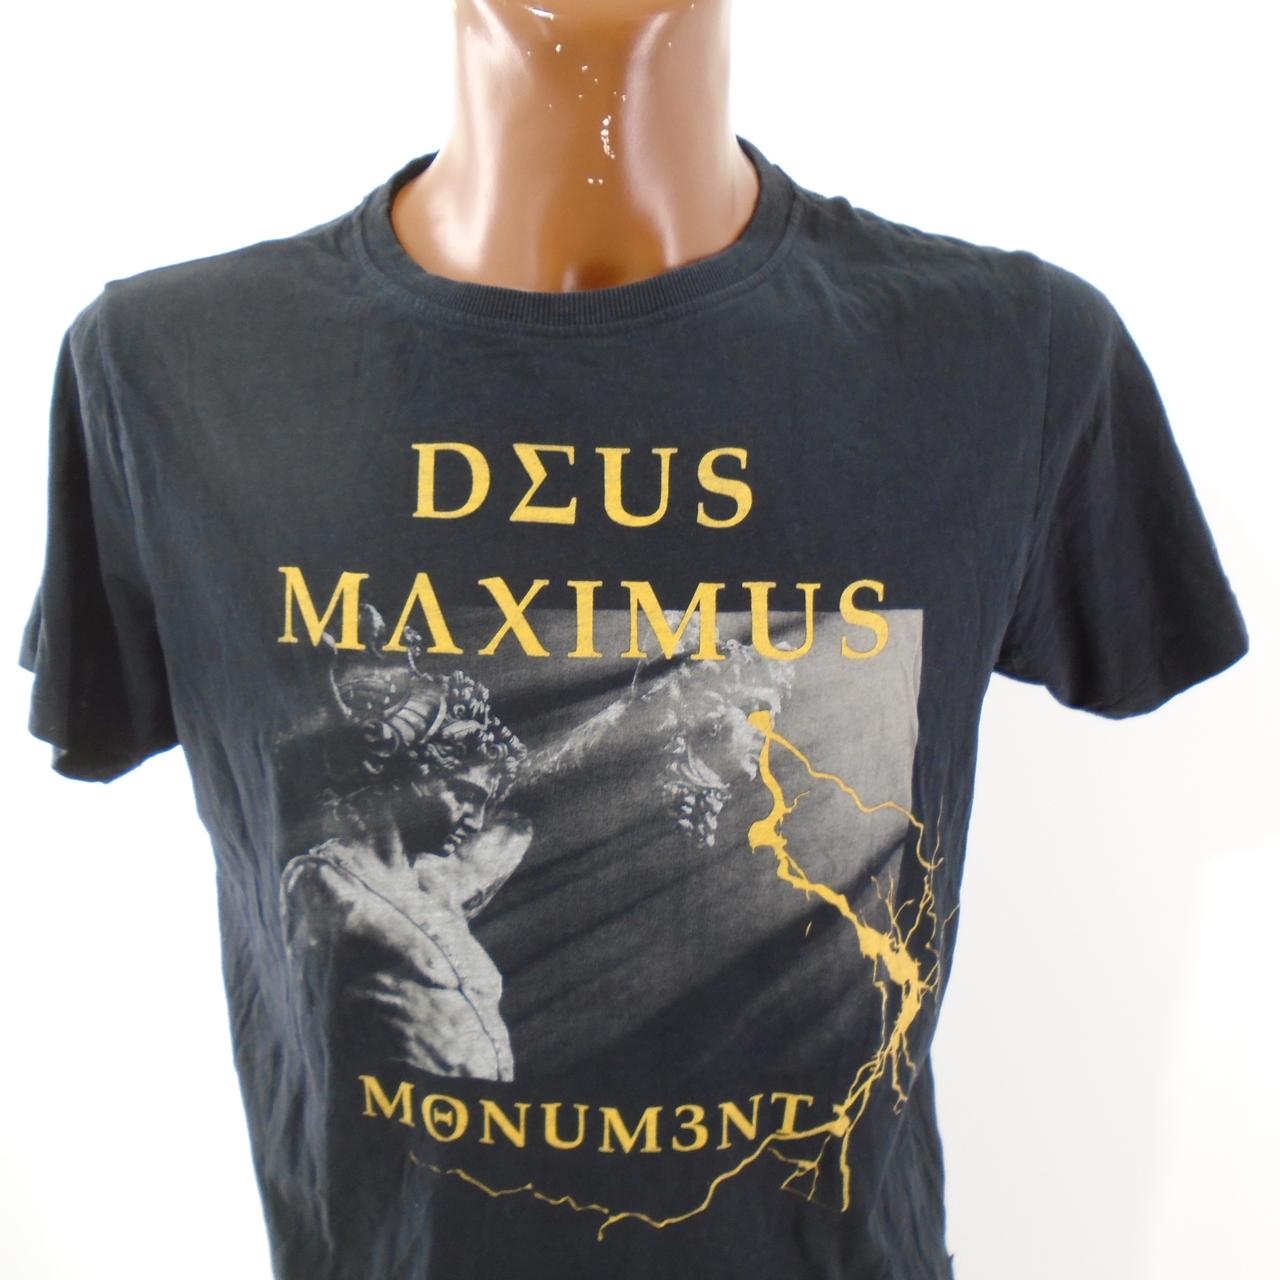 Men's T-Shirt Deus Maximus. Black. L. Used. Good